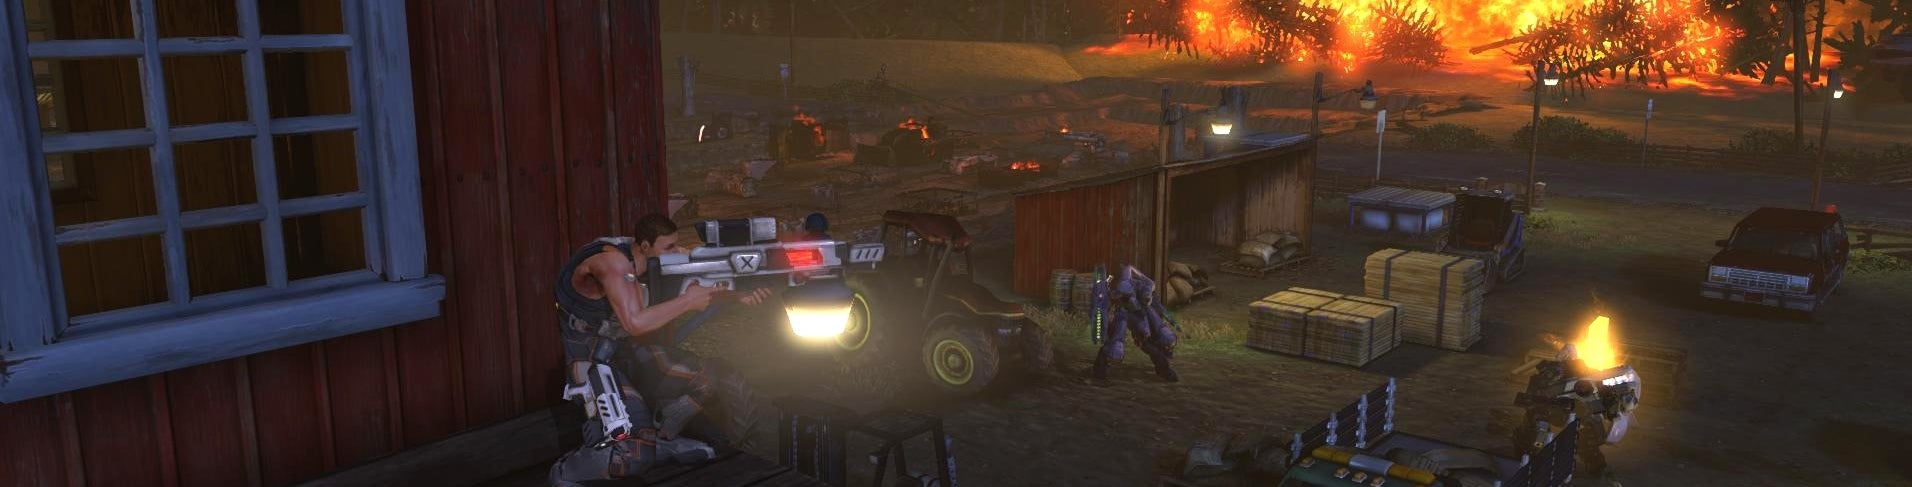 Afbeeldingen van Uitbreiding XCOM: Enemy Unknown aangekondigd